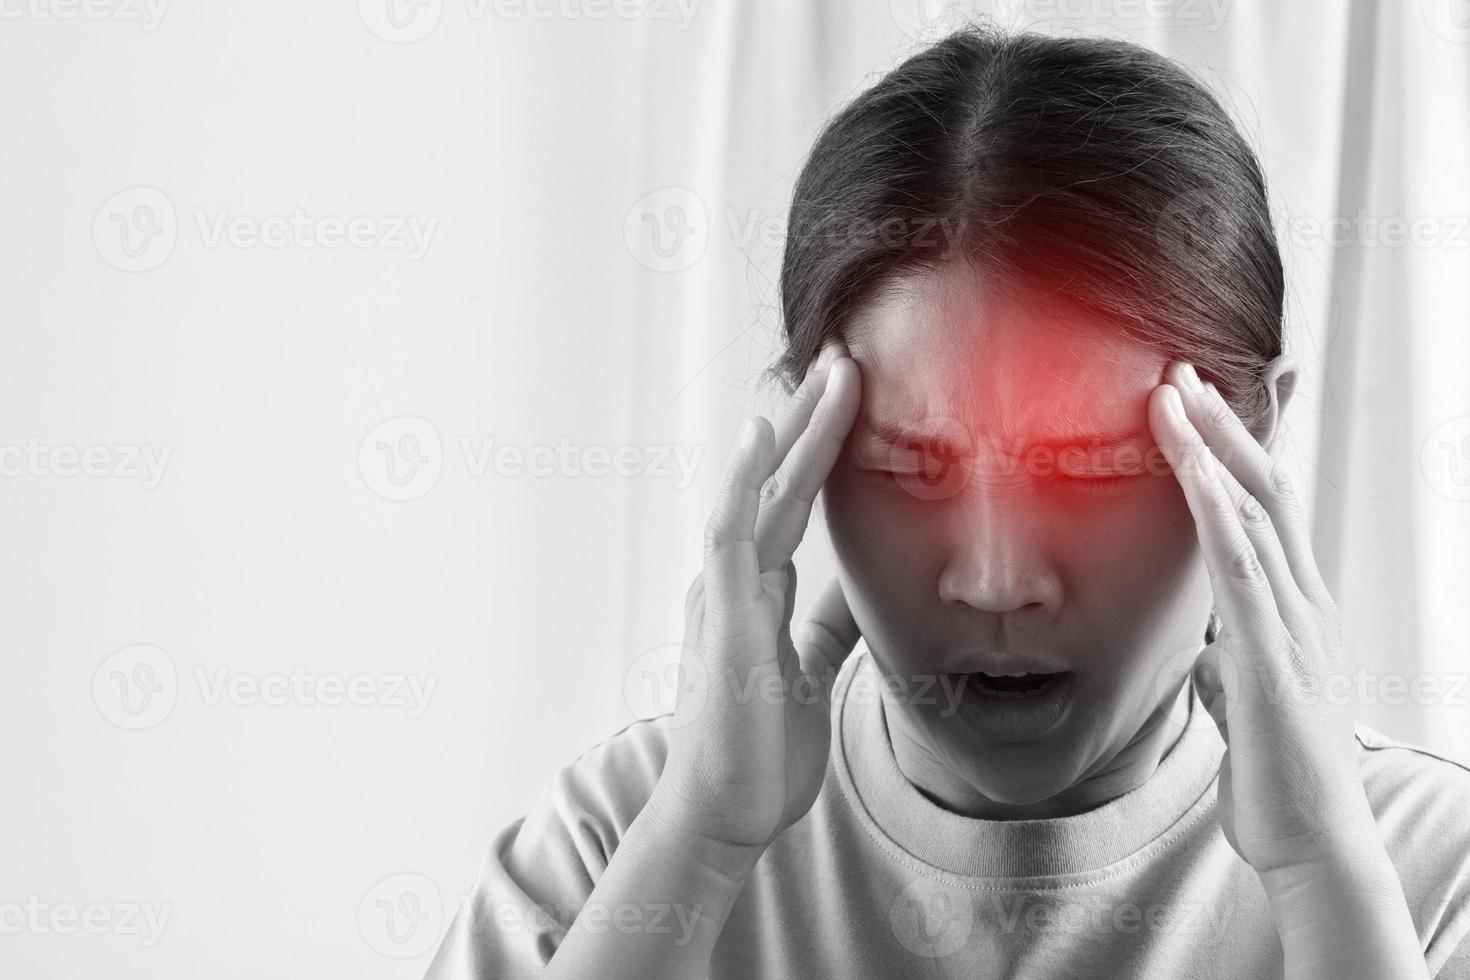 Los dolores de cabeza pueden tener una causa subyacente, como dormir poco, anteojos incorrectos, estrés, escuchar ruidos fuertes. foto